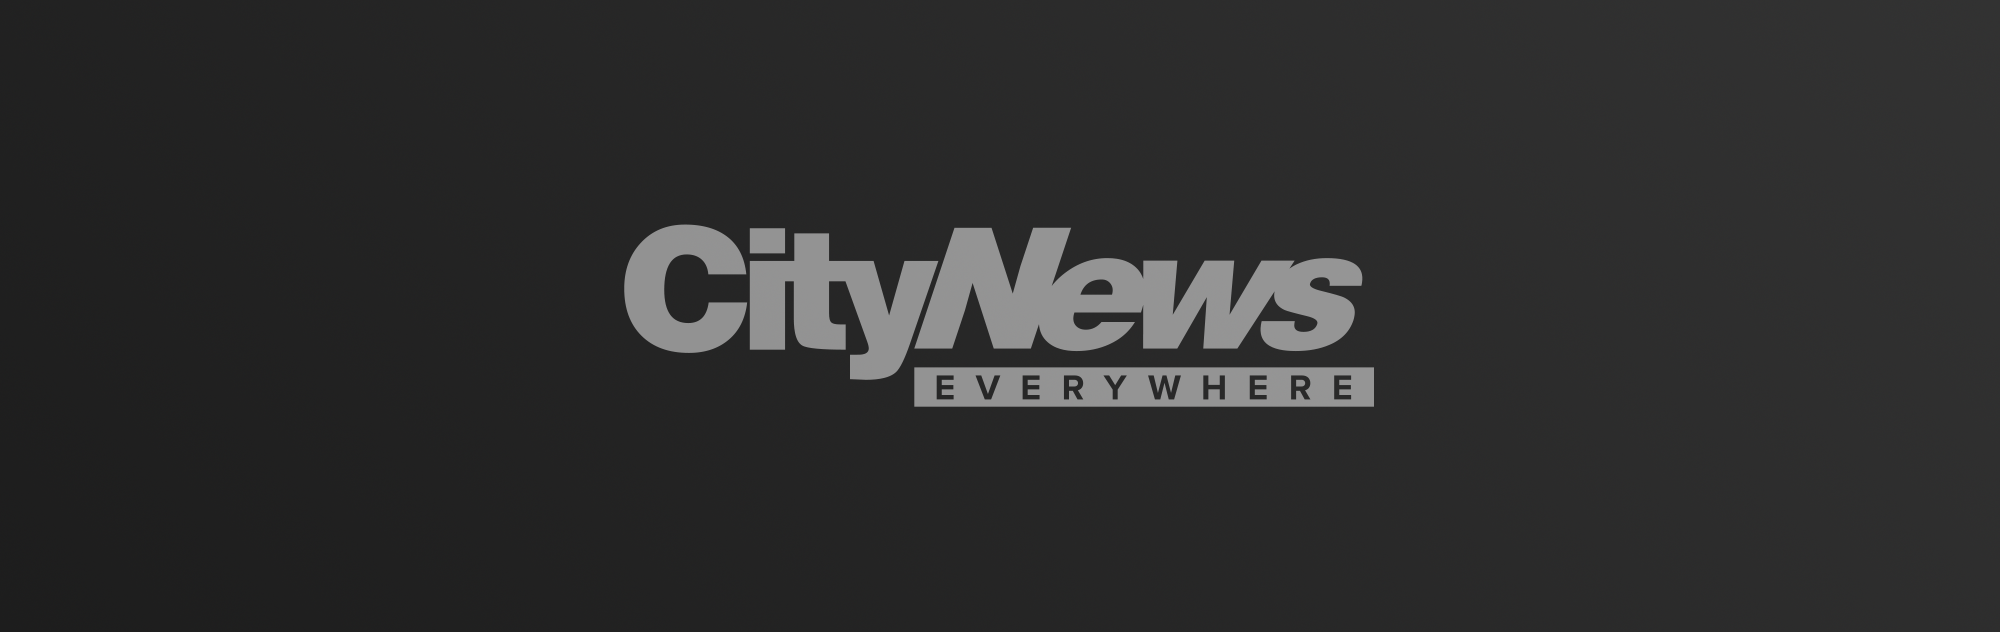 City News logo on dark gradient background